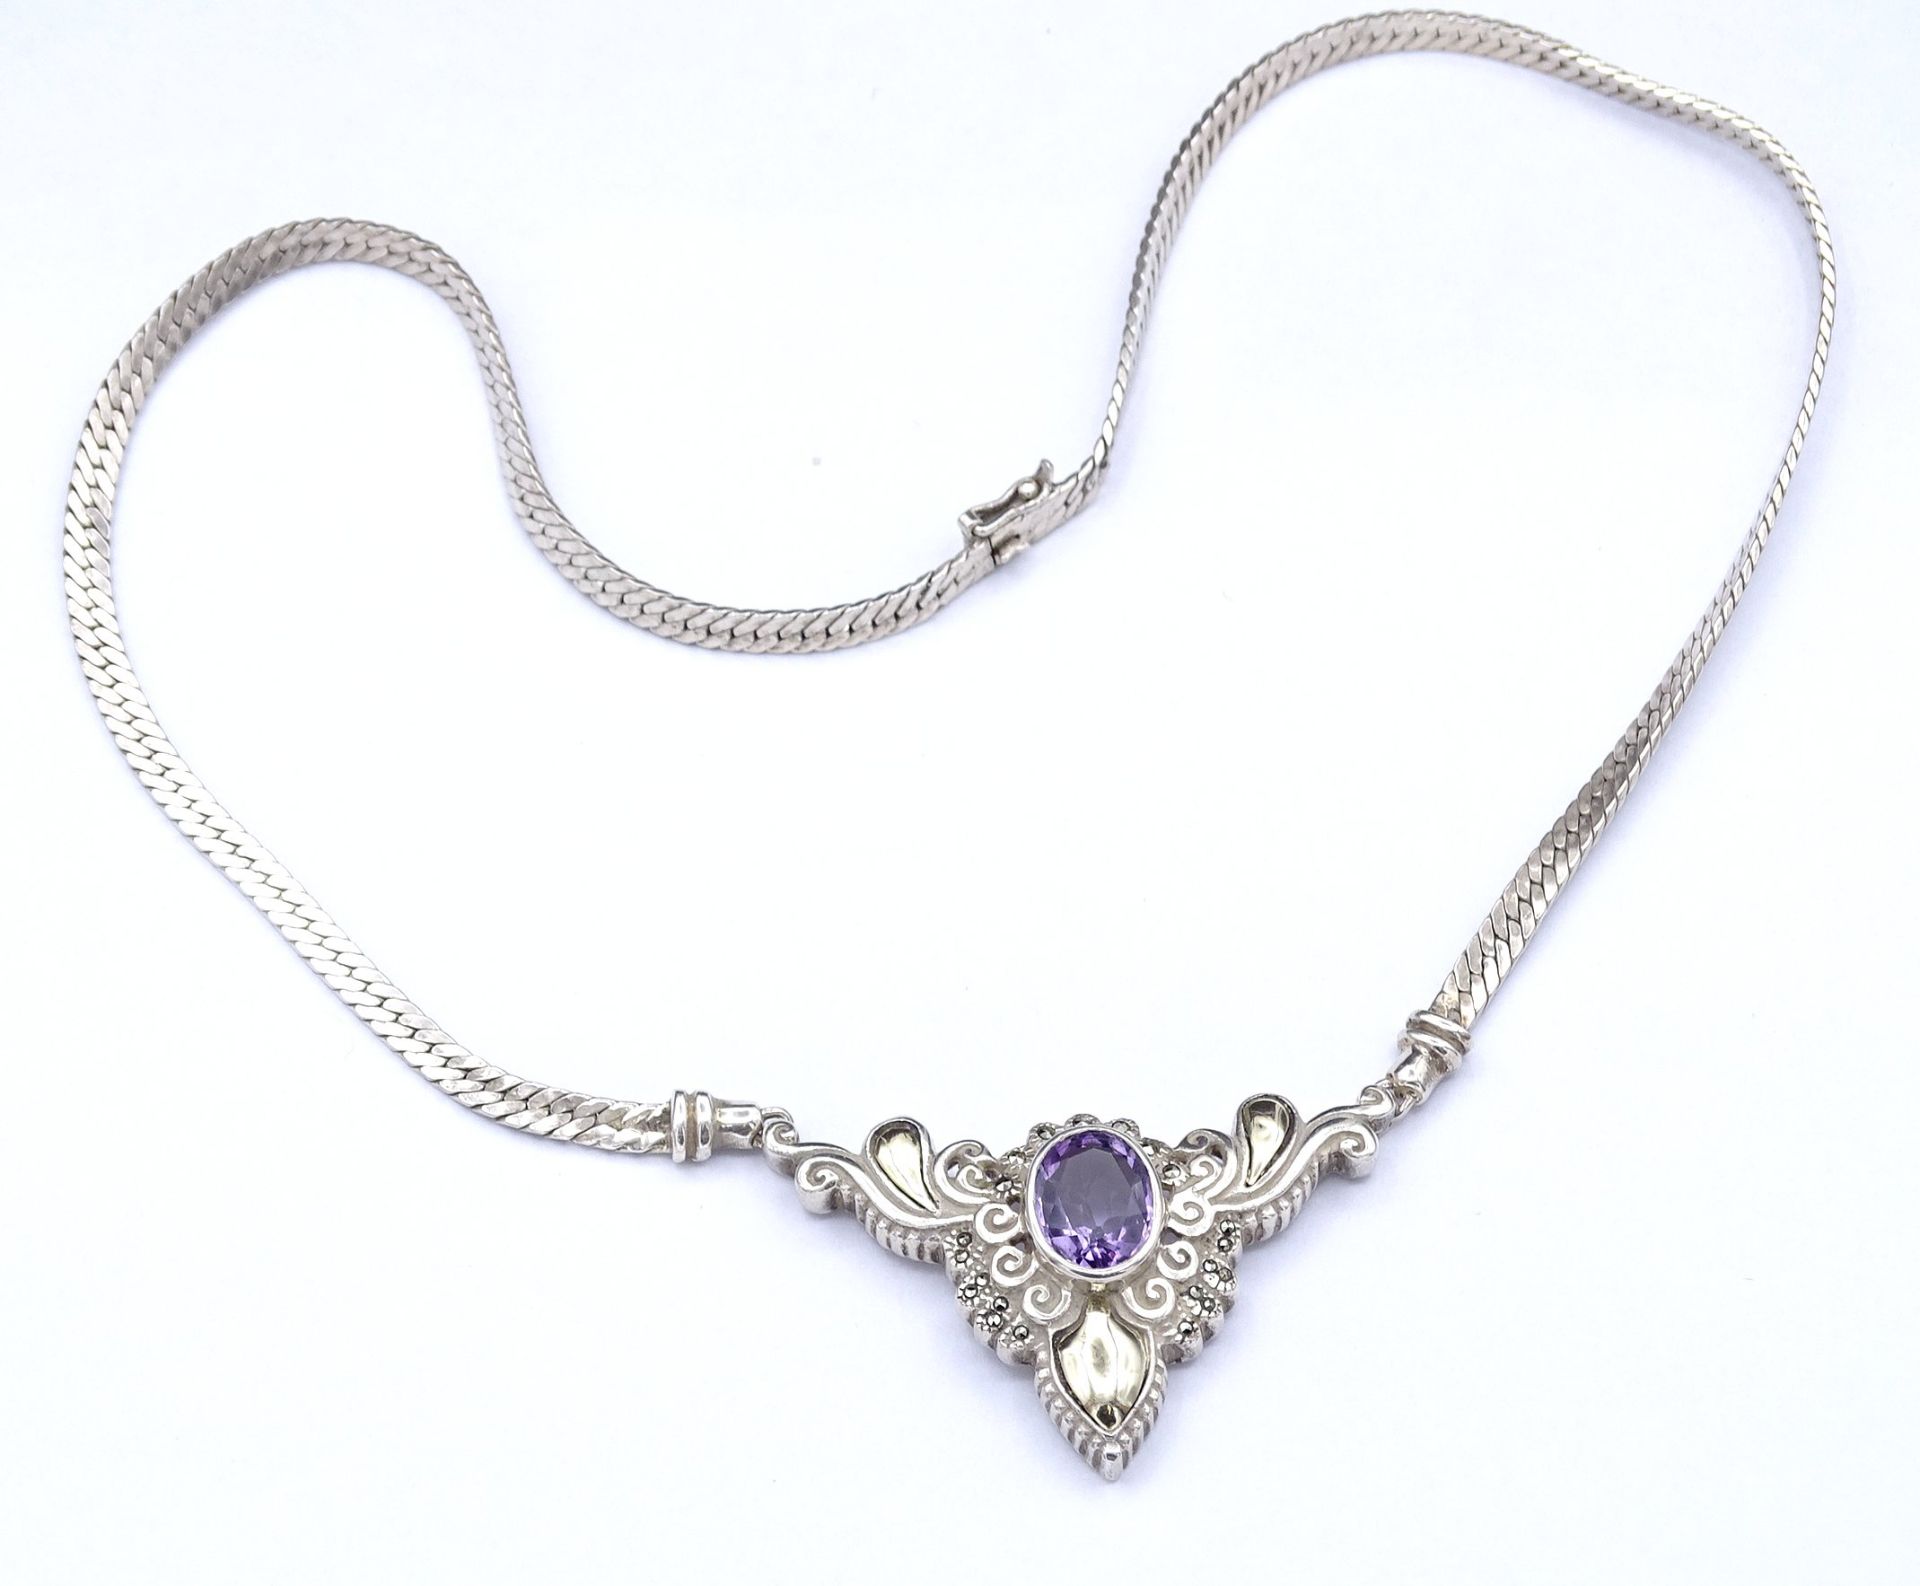 Halskette mit einem oval facc. Amethyst, Silber 925 + Gold 18K, L. 45,5cm, 26,3g. - Bild 7 aus 8